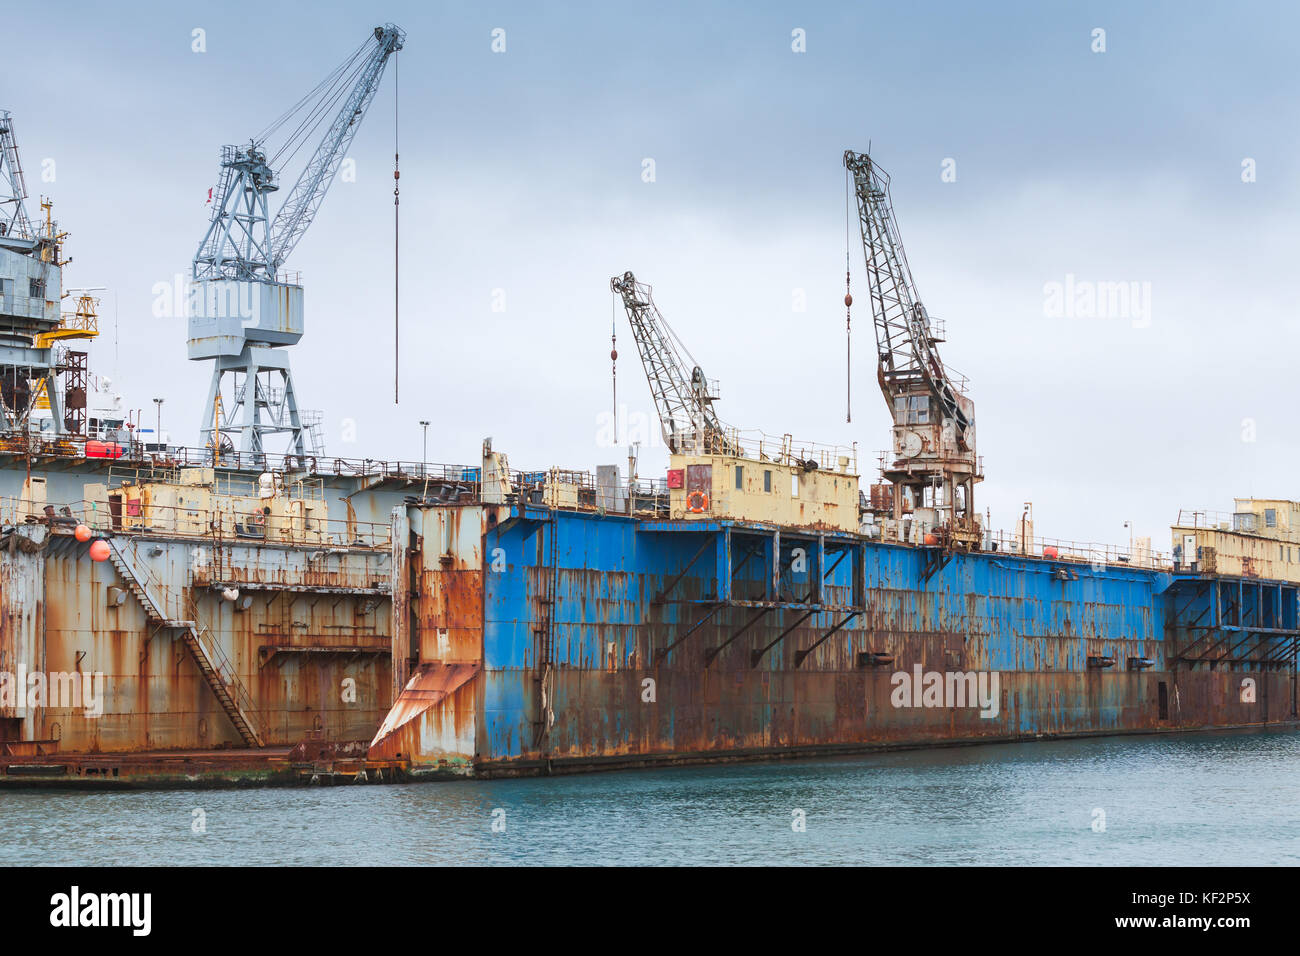 Blue rusty bacino di carenaggio, cantiere navale nel porto di Hafnarfjordur, Islanda Foto Stock